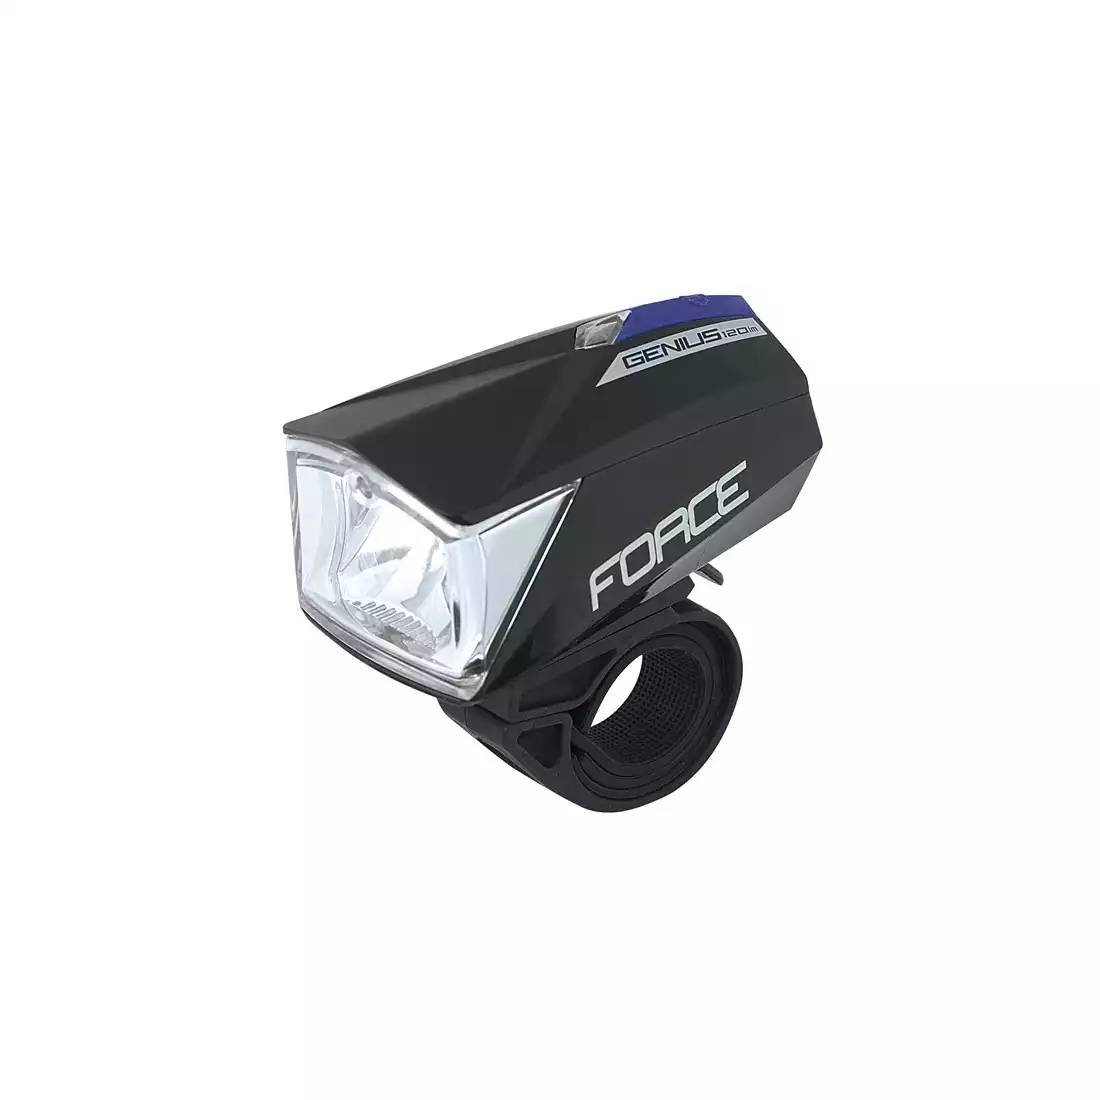 FORCE GENIUS - 45170 - Lampka rowerowa przednia, USB,  120 lumenów